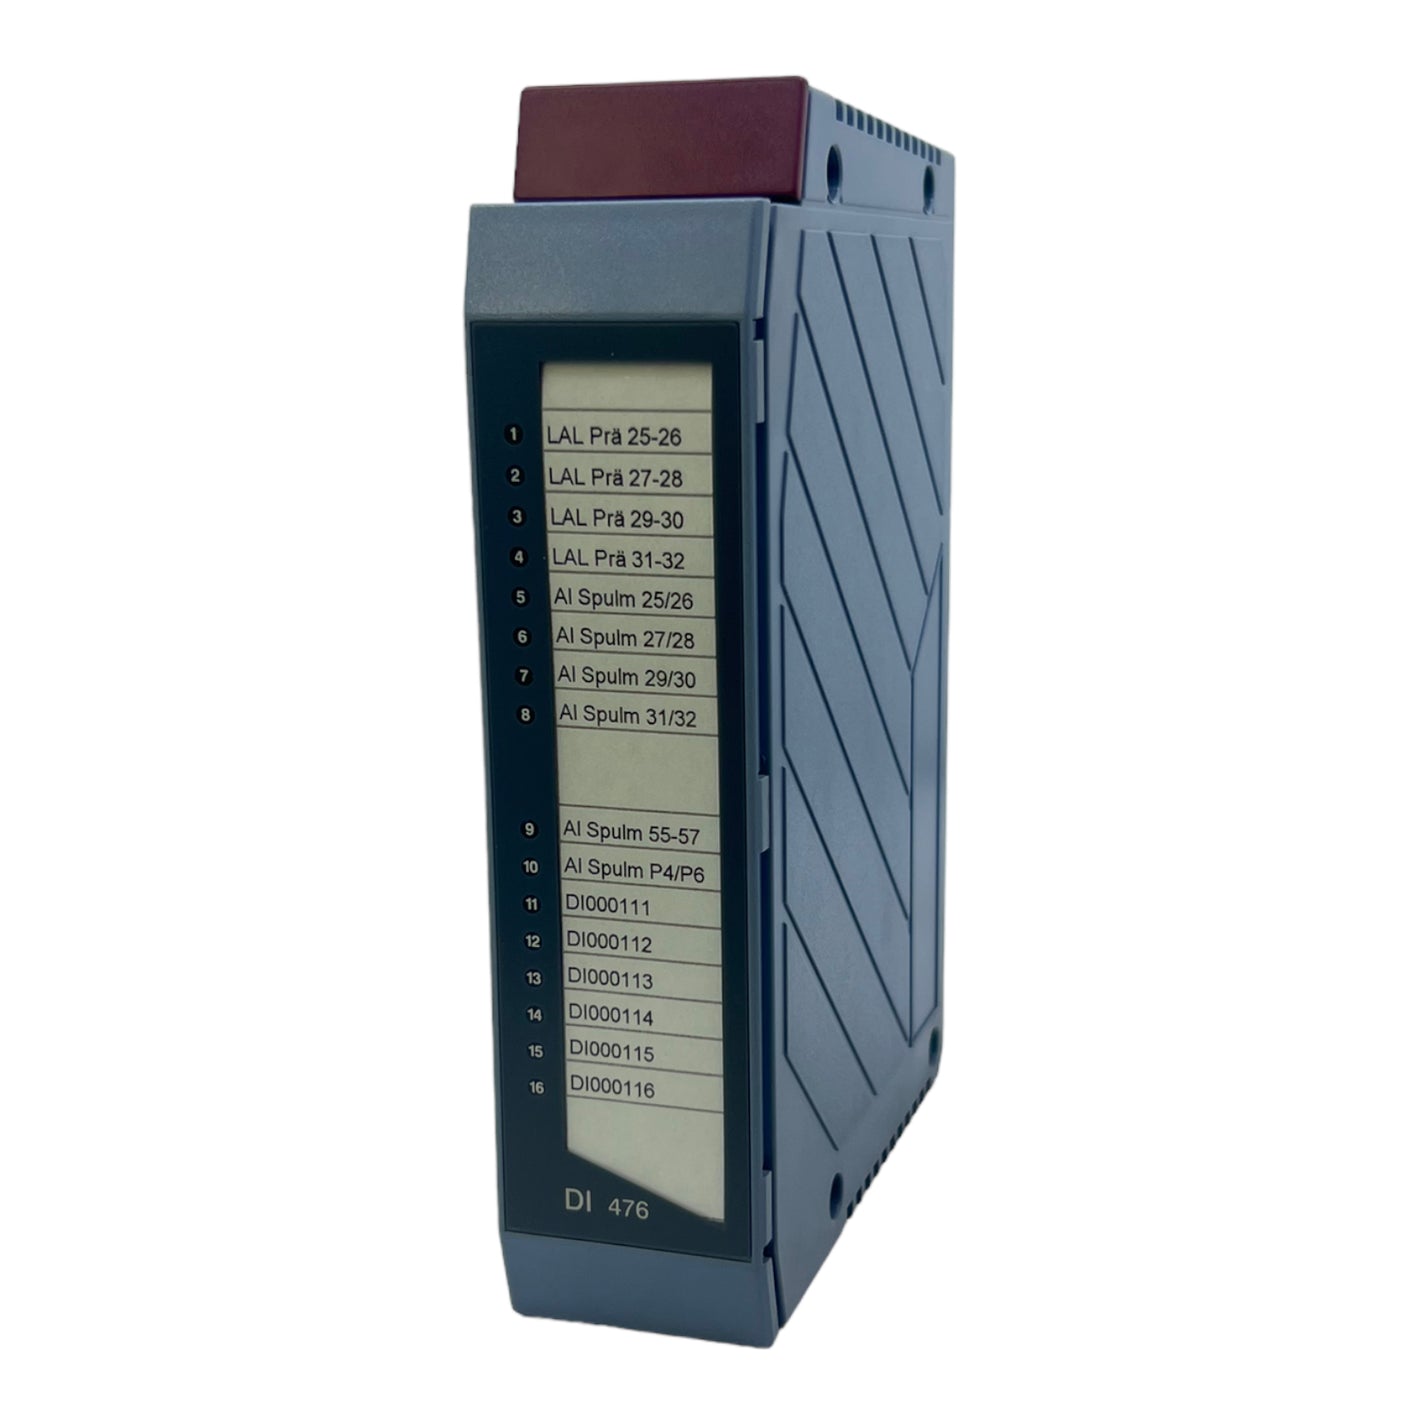 B&amp;R 3DI476.6 Digital input module 24V DC 5V DC 1.5W IP20 0 to 60°C 